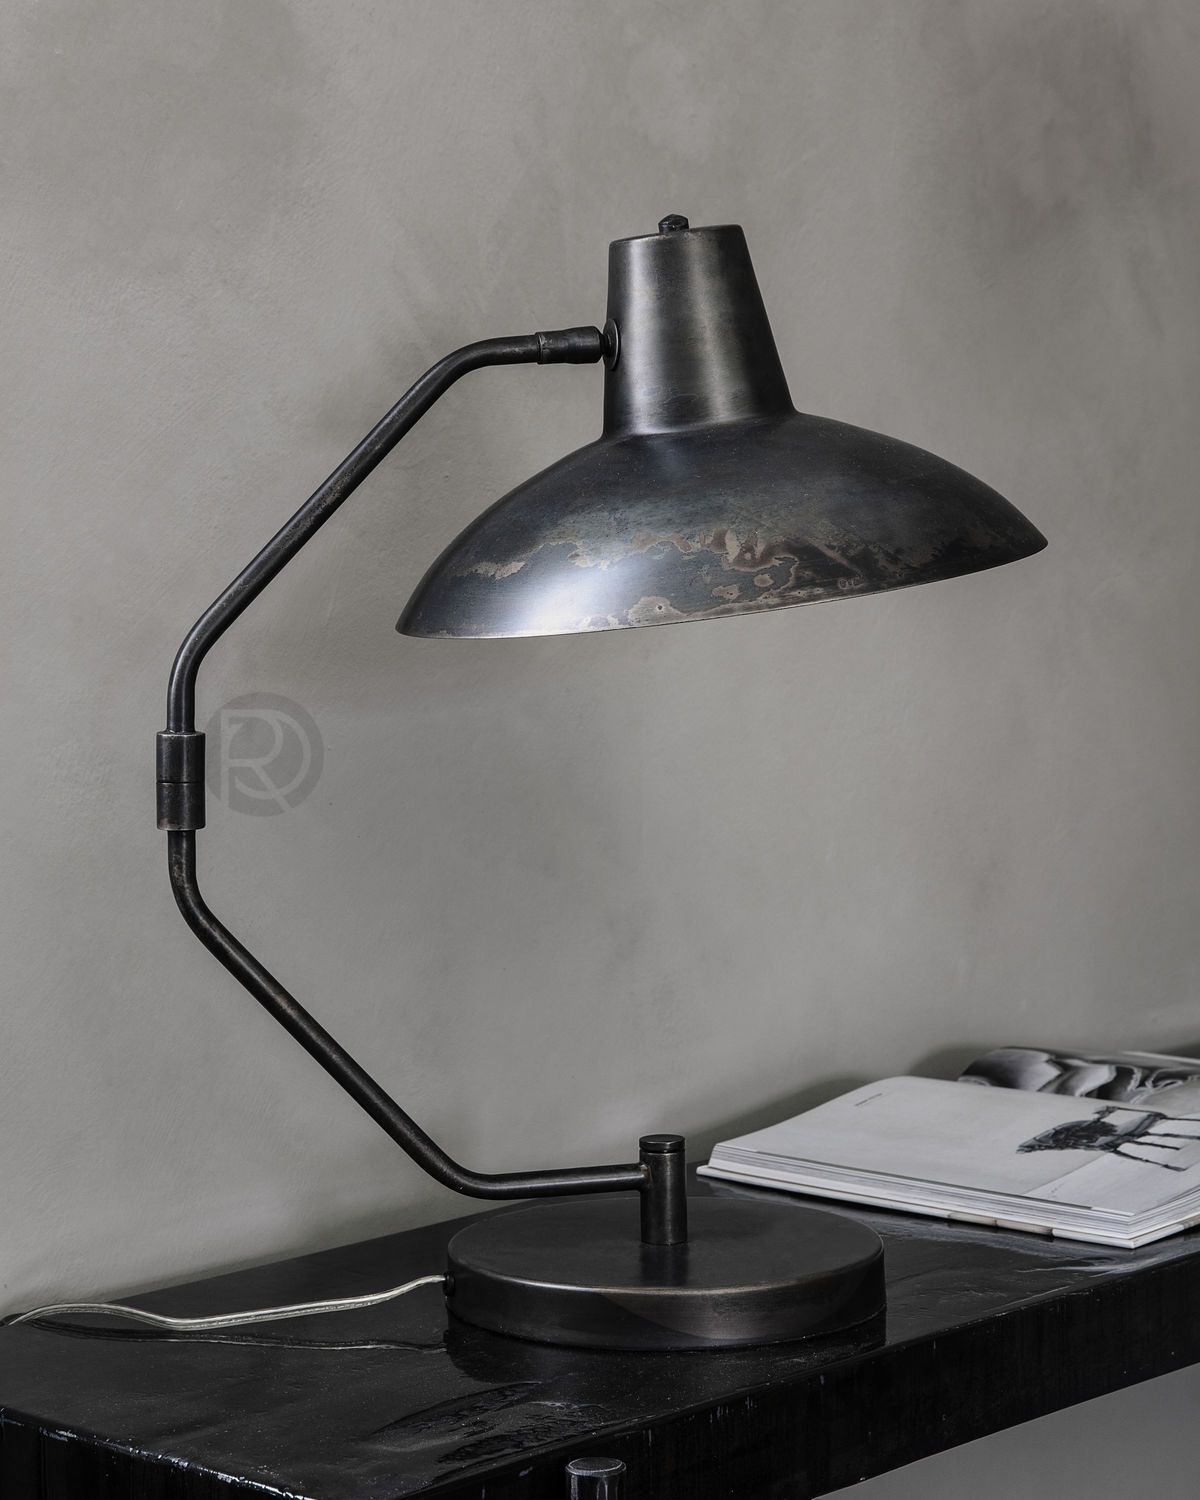 Настольная лампа DESK TABLE by House Doctor